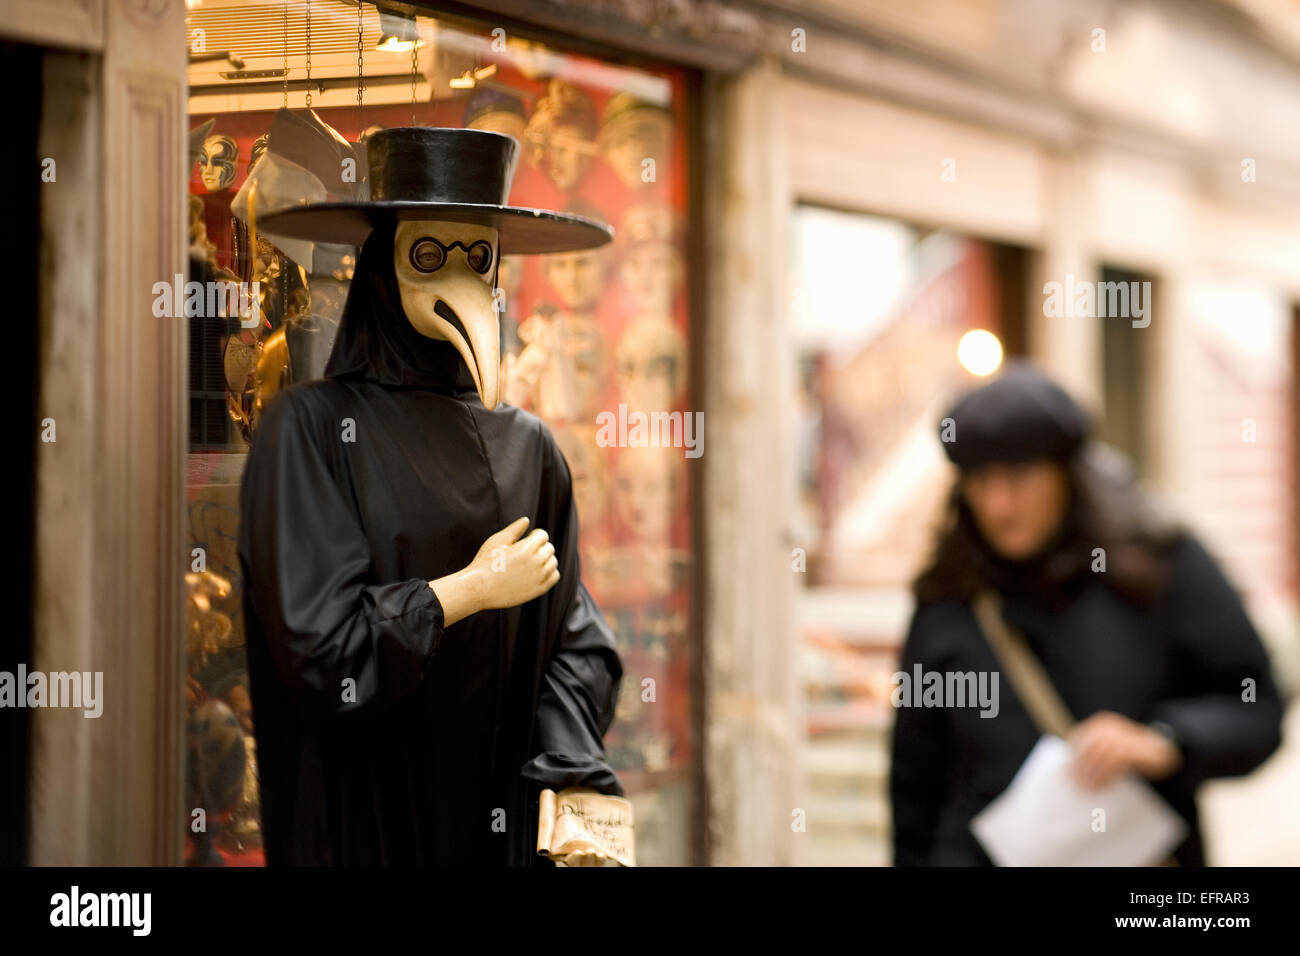 Deux personnes dans la rue à Venise, l'une dans un costume de carnaval avec grand chapeau et masque d'oiseaux Banque D'Images